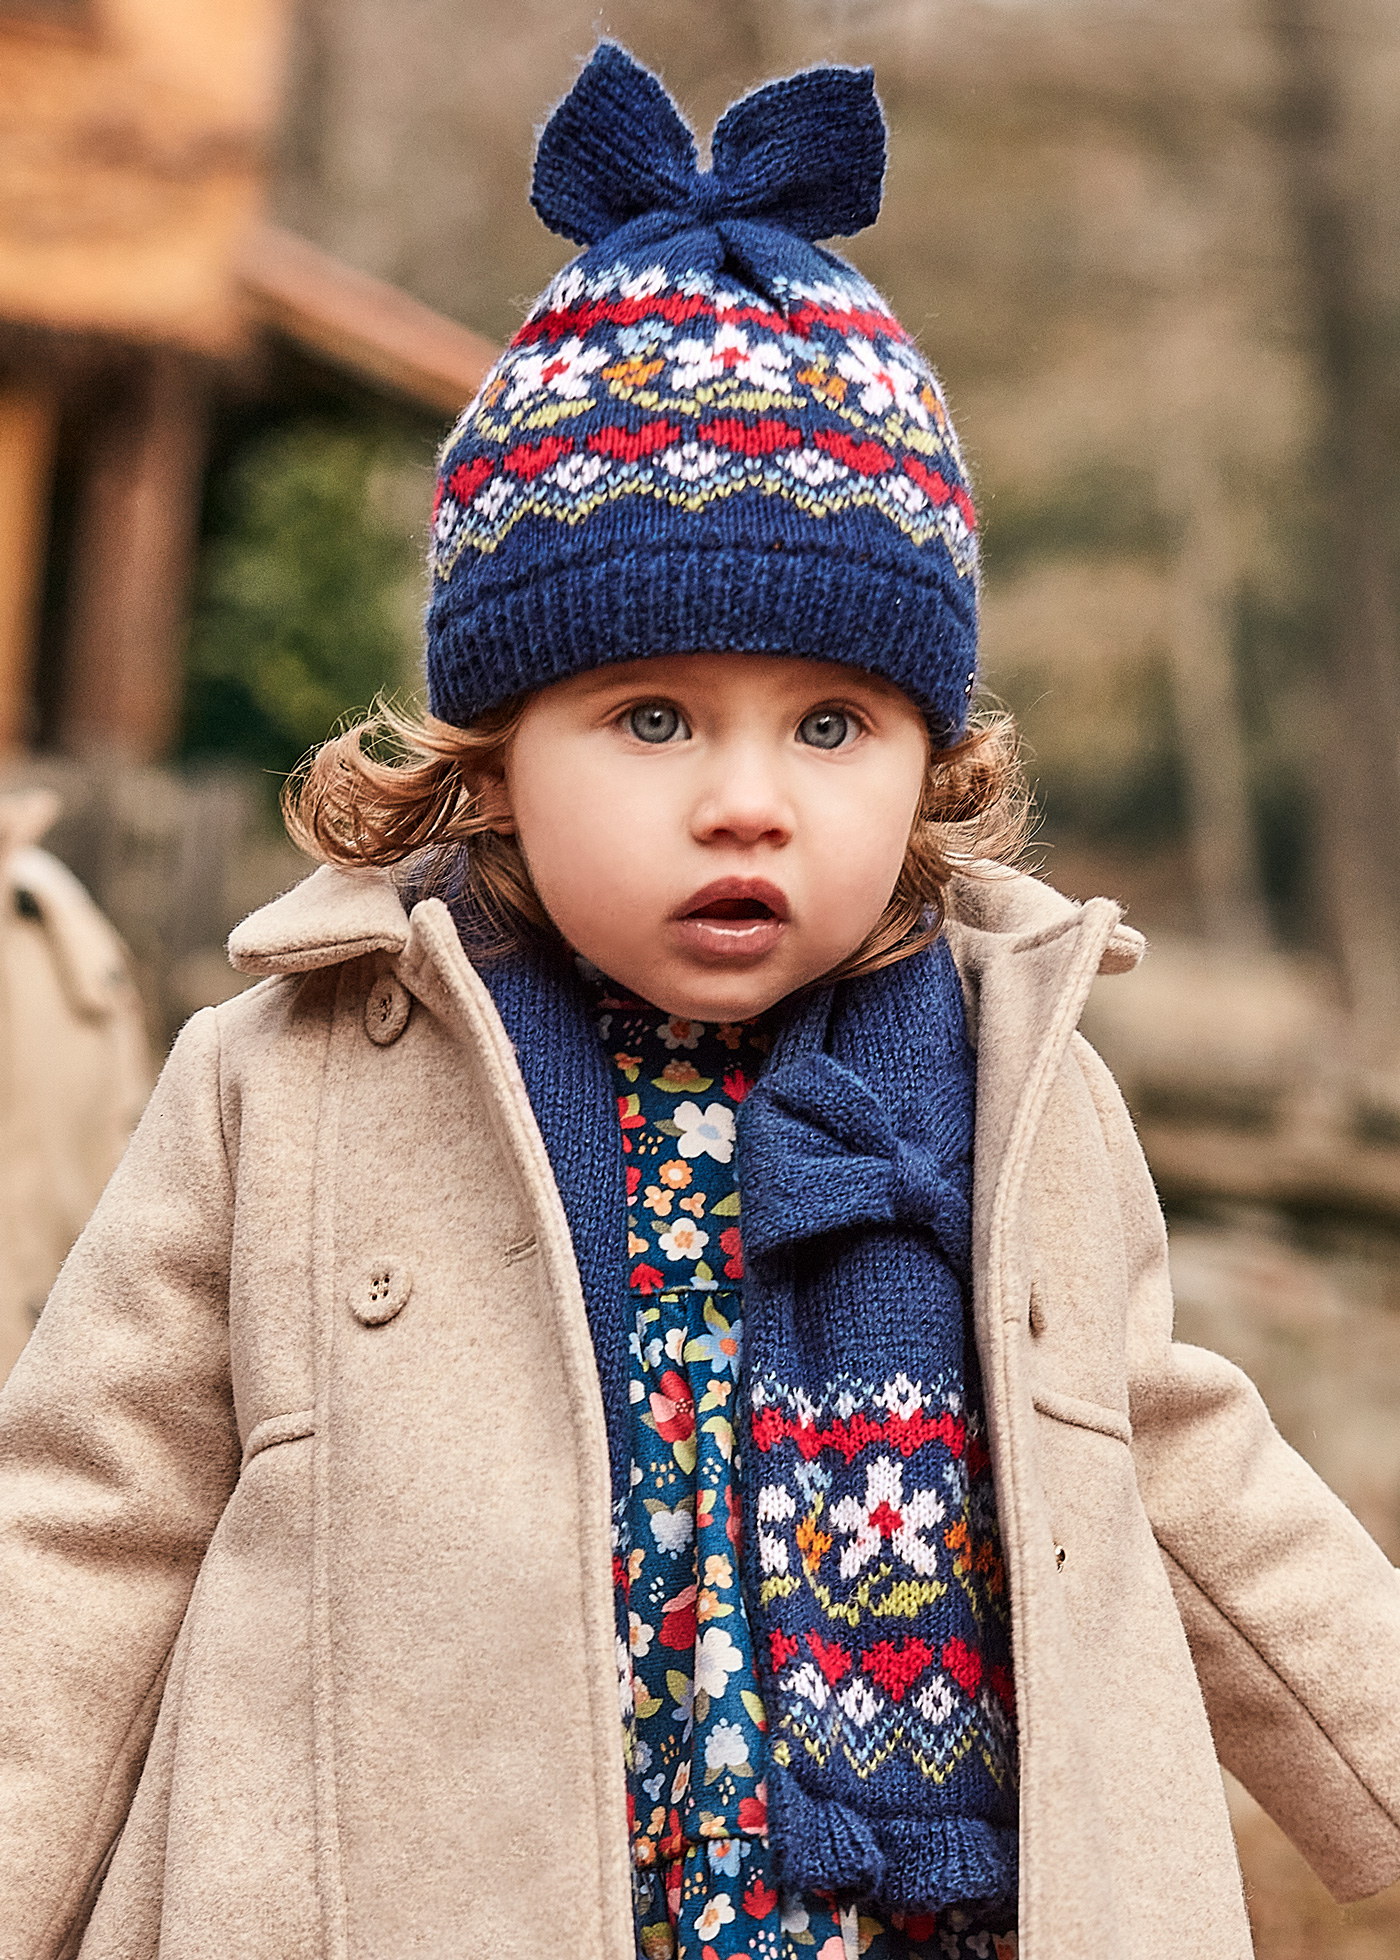 Conjunto em tricot, casaco + leggings + gorro, para bebé-Bebé 0-36